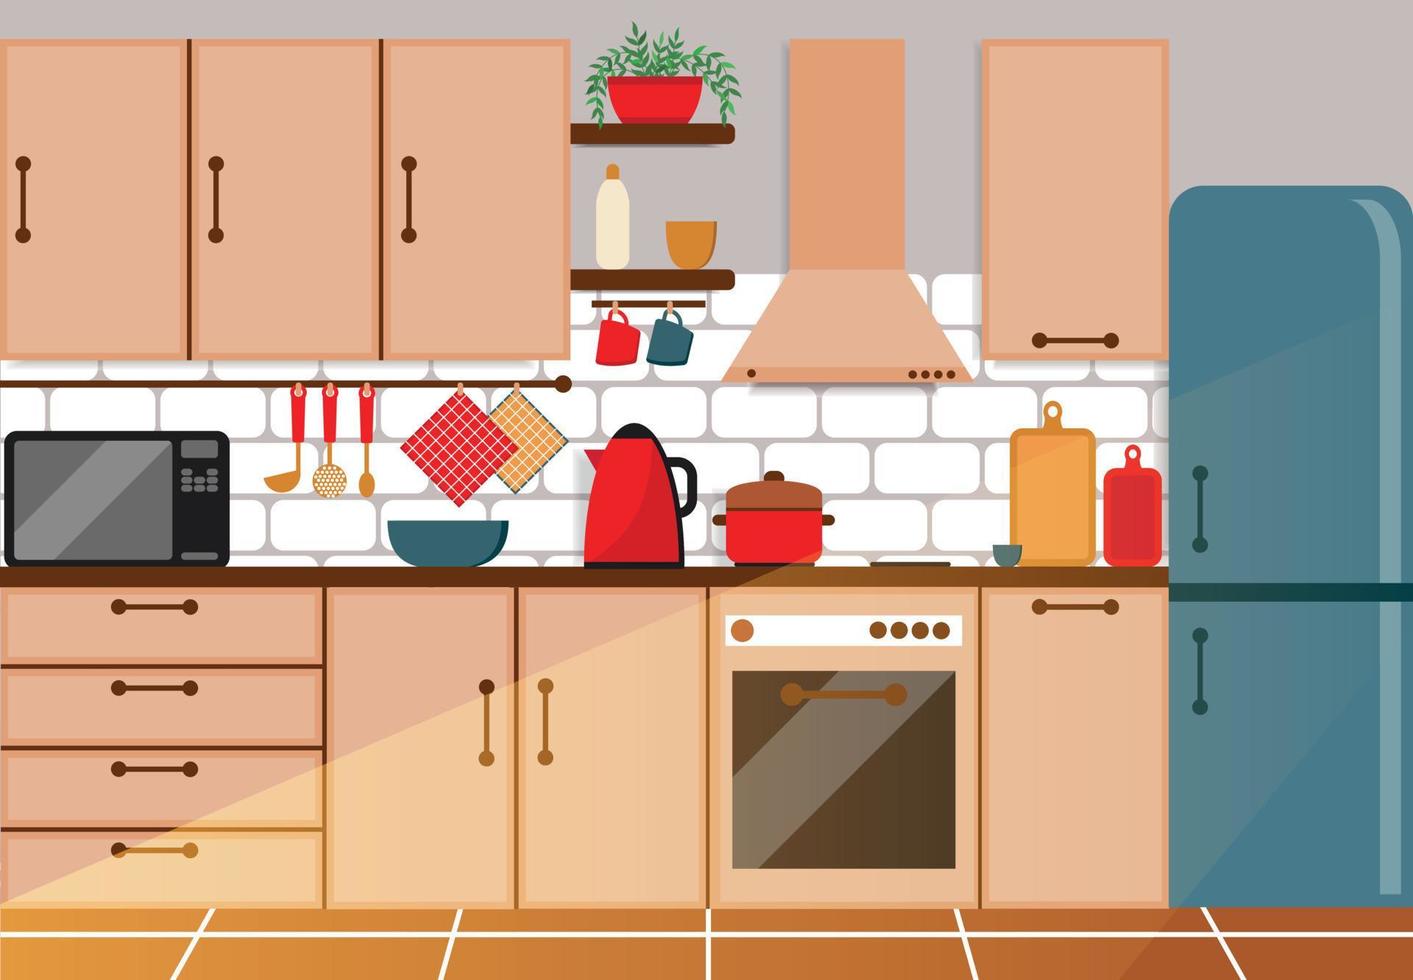 acolhedor cozinha interior, plano vetor ilustração. frigorífico, forno, microondas, chaleira, louça, cozinha definir.